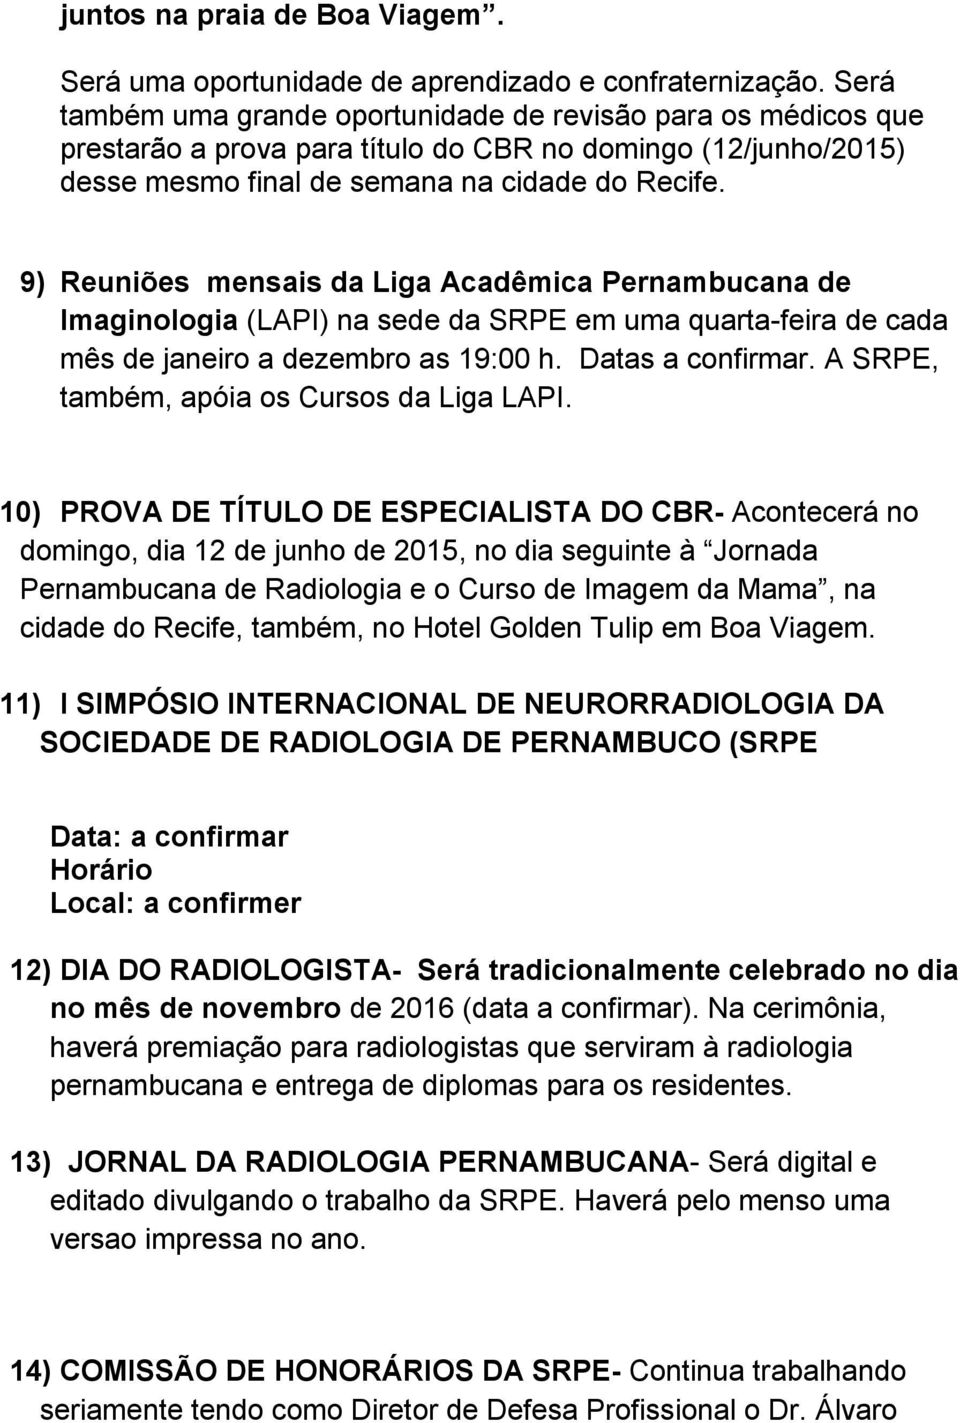 9) Reuniões mensais da Liga Acadêmica Pernambucana de Imaginologia (LAPI) na sede da SRPE em uma quarta-feira de cada mês de janeiro a dezembro as 19:00 h. Datas a confirmar.